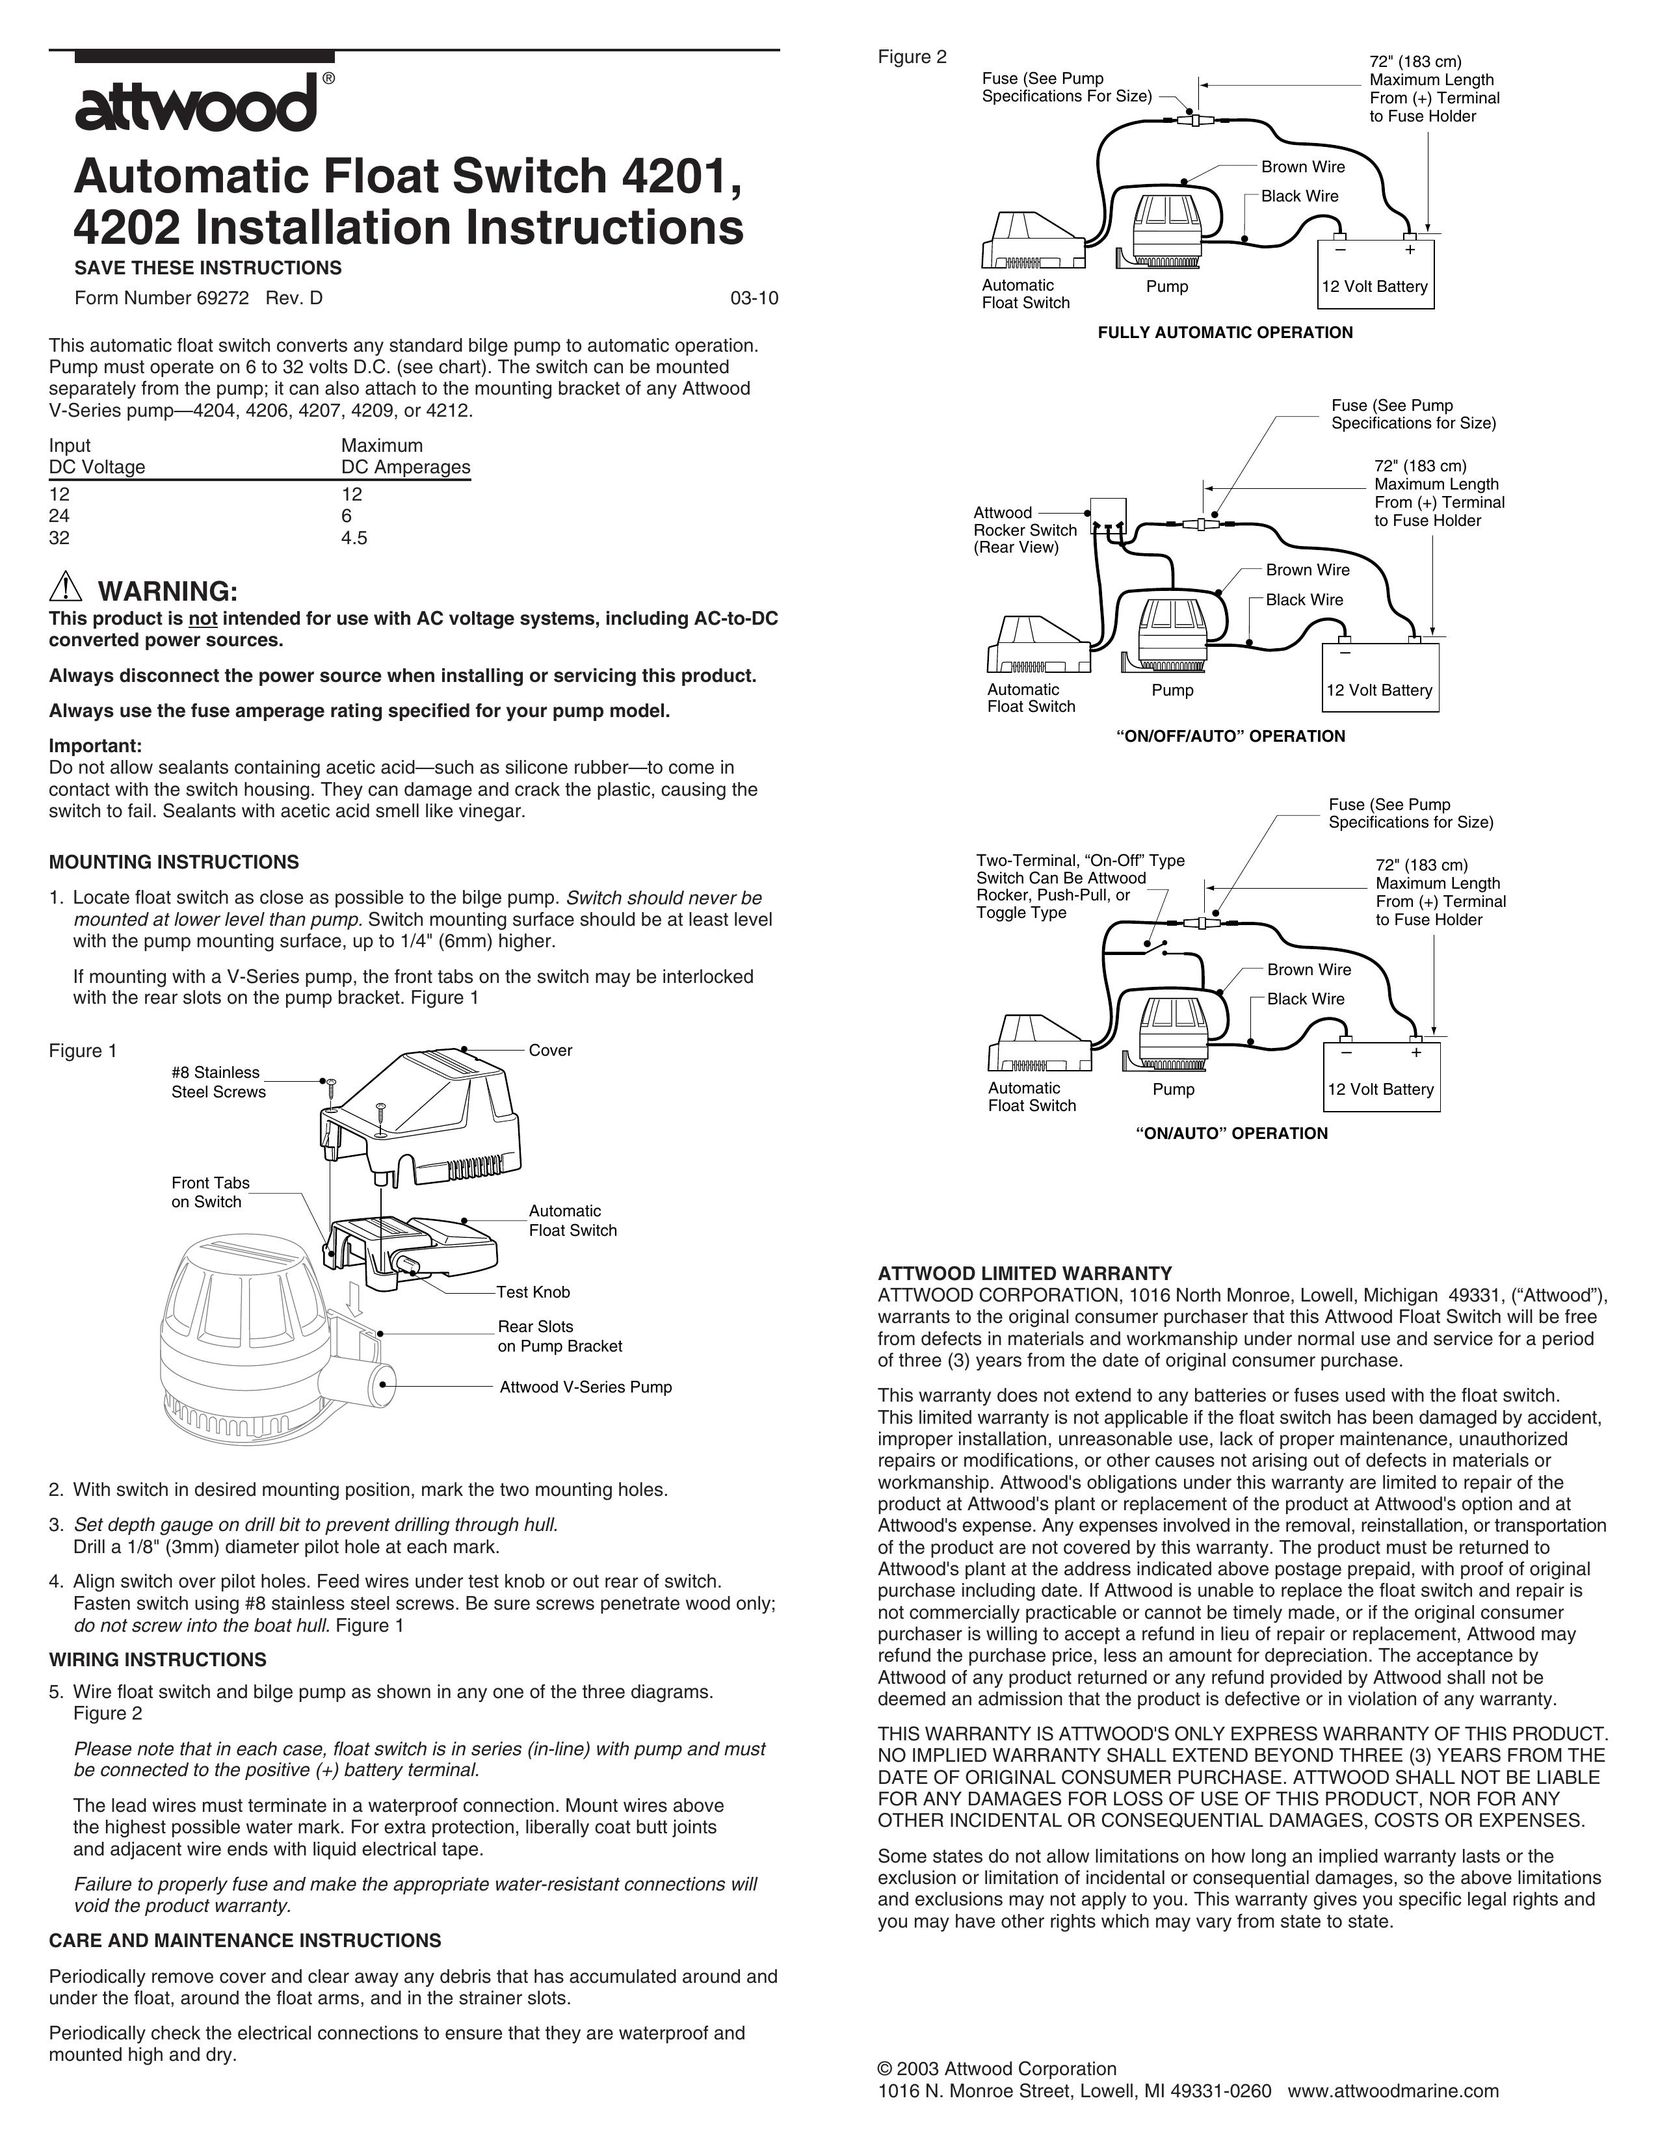 Attwood 4206 Plumbing Product User Manual